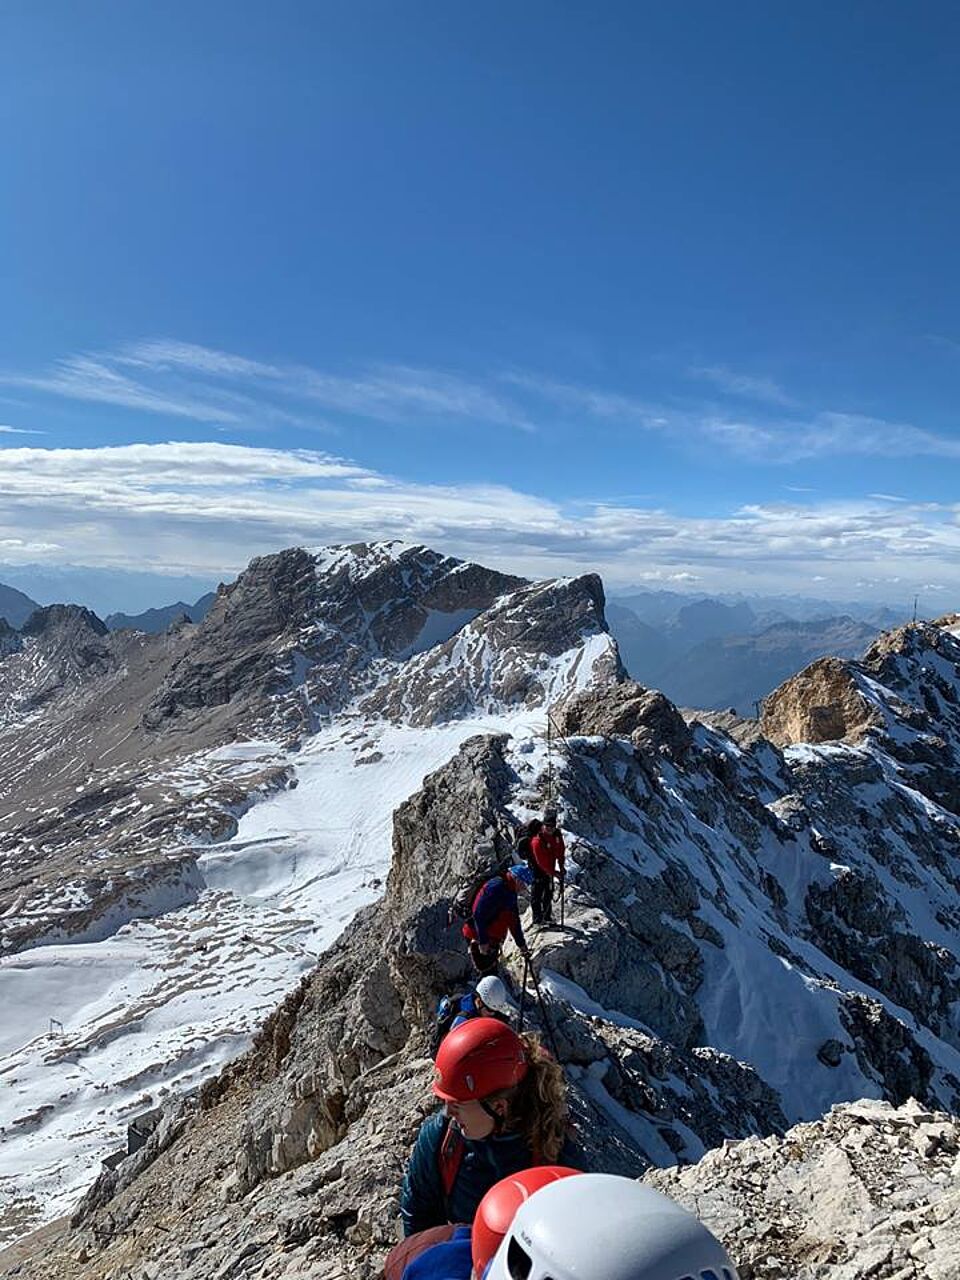 Mehrere Personen erklimmen eine schneebedeckte Bergspitze. Sie wandern entlang eines Sicherungsseils bei strahlend blauem Himmel.